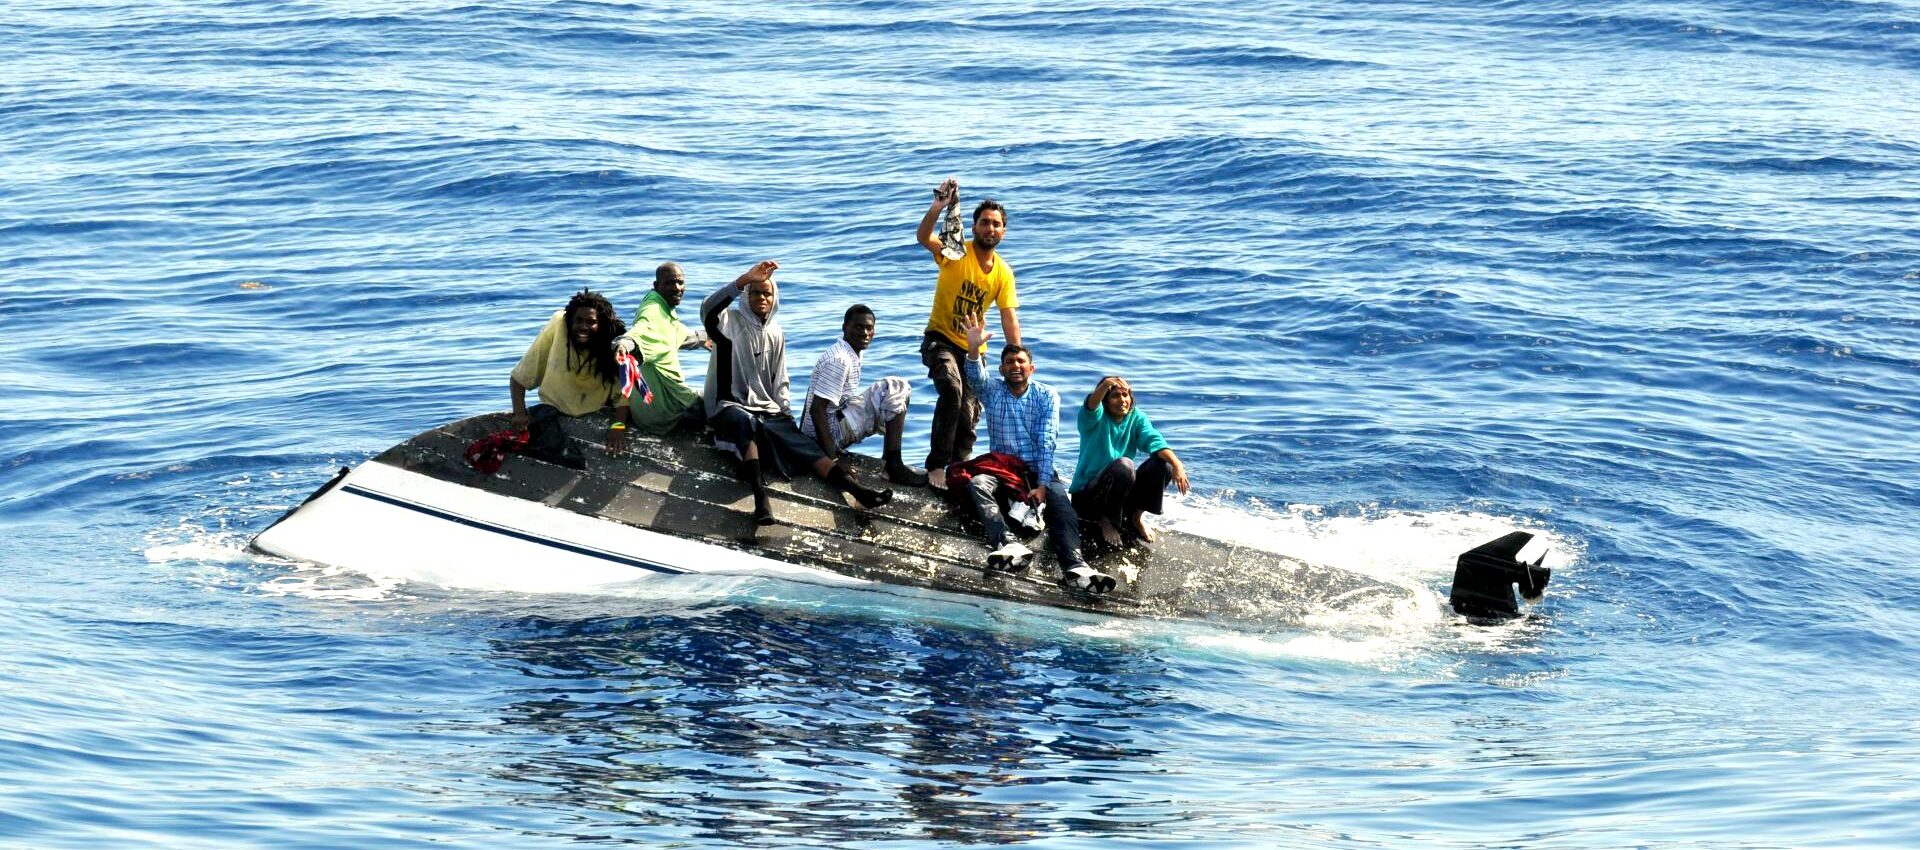 La Journée mondiale du migrant se déroulera le 24 septembre prochain | © Coast Guard News/Flickr/CC BY-NC-ND 2.0